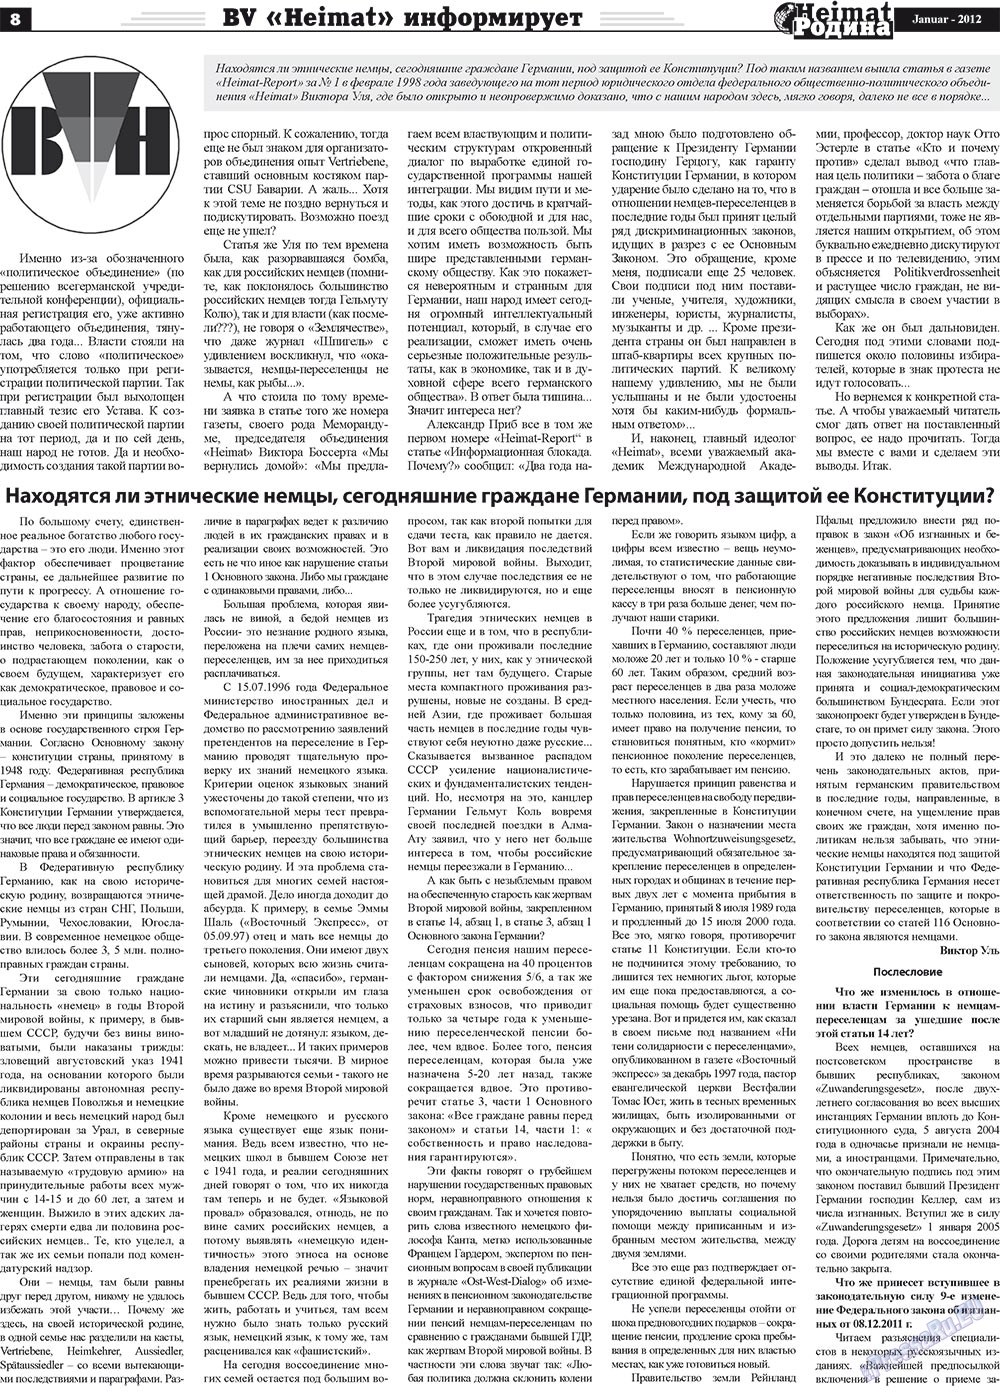 Heimat-Родина (газета). 2012 год, номер 1, стр. 8